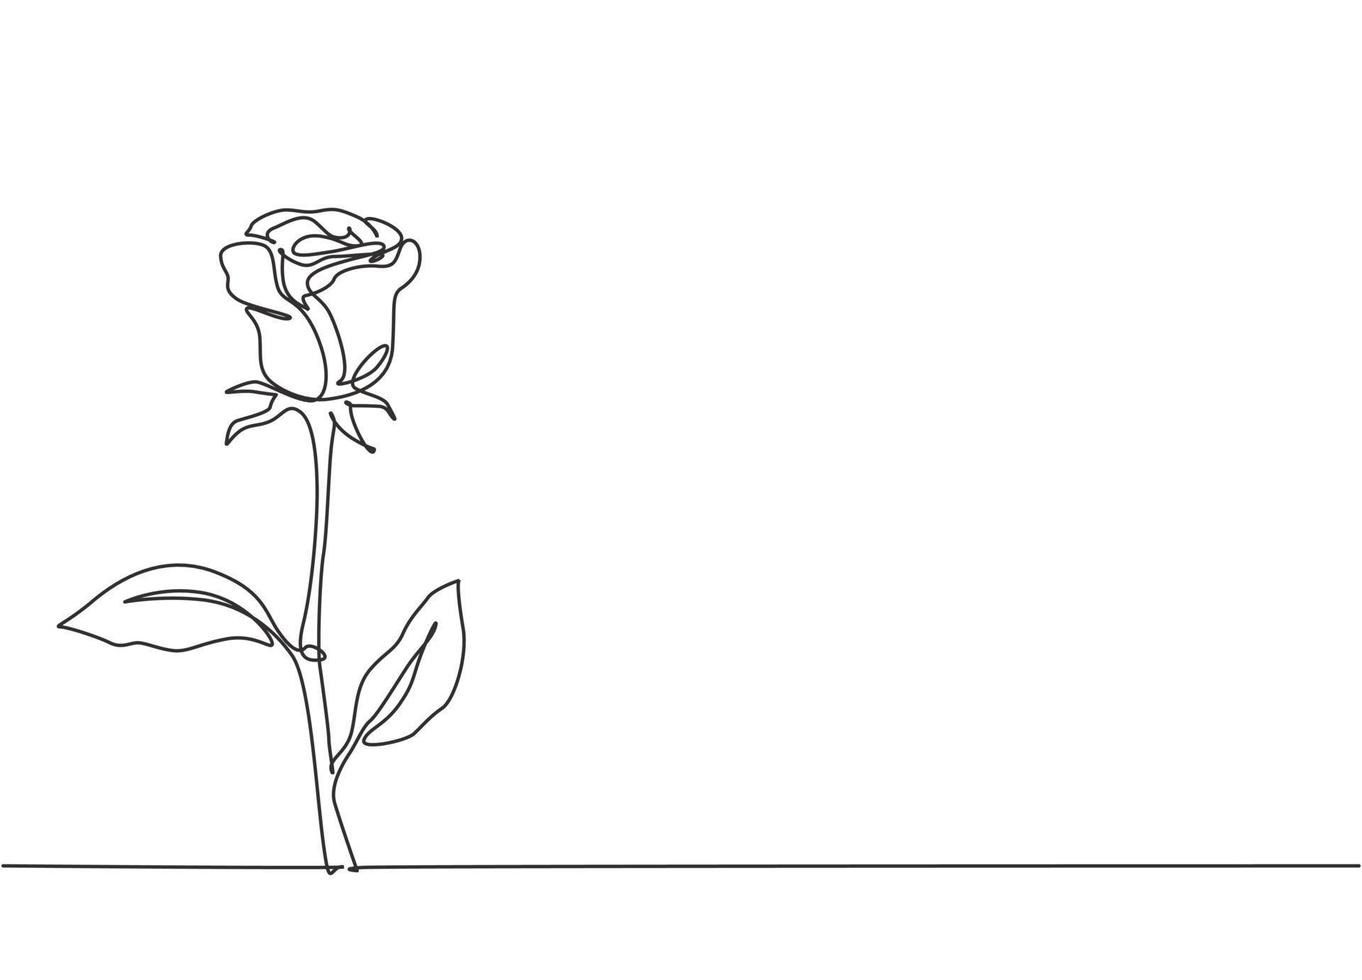 um desenho de linha contínua de linda flor rosa fresca romântica. cartão de felicitações da moda, convite, logotipo, banner, conceito de cartaz linha única desenhar ilustração vetorial de design gráfico vetor